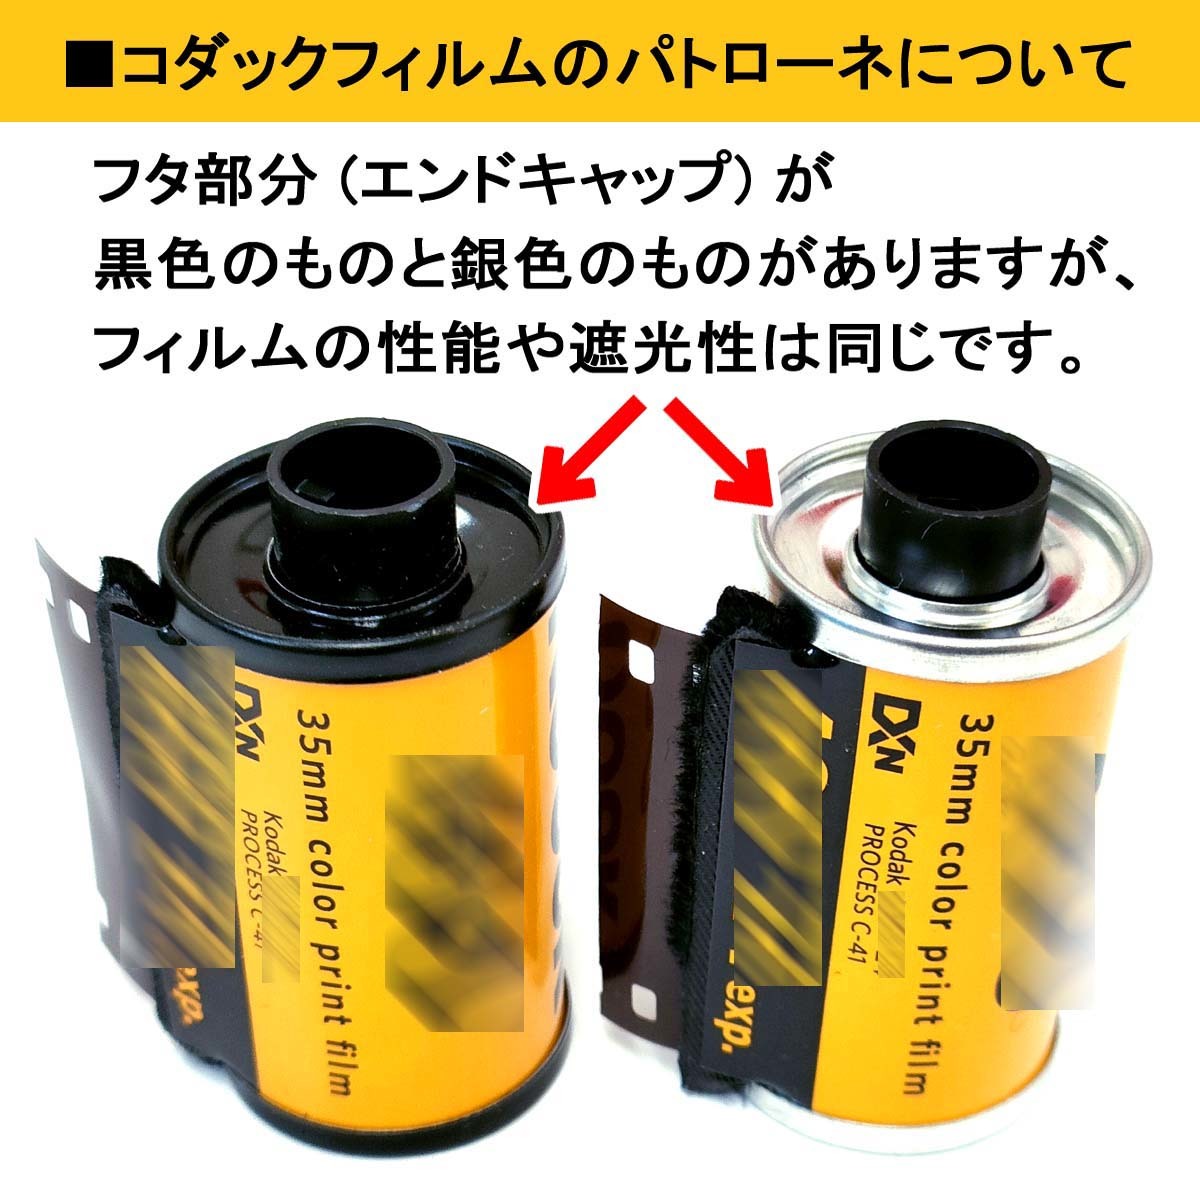 GOLD200-36 sheets .[9ps.@]Kodak color nega film ISO sensitivity 200 135/35mm[ prompt decision ]ko Duck CAT188-0806*0041771880804 new goods 